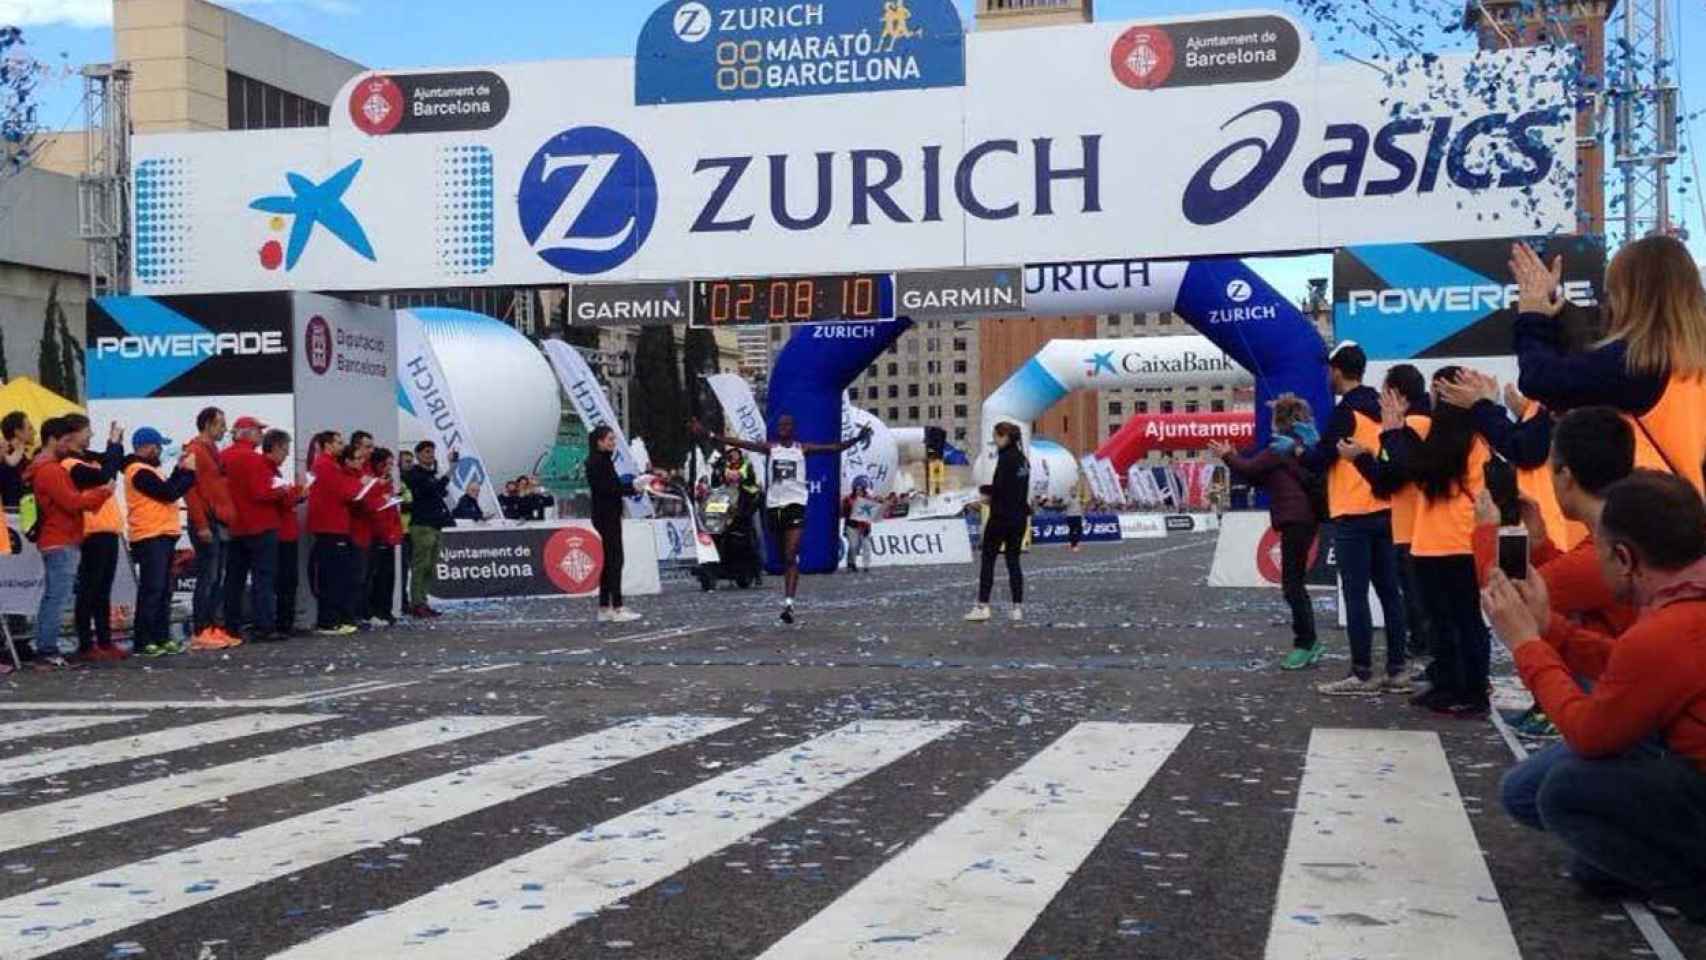 Anthony Martitim, en el momento de proclamarse ganador de la Maraton de Barcelona 2018 / @zurichmaratondebarcelona